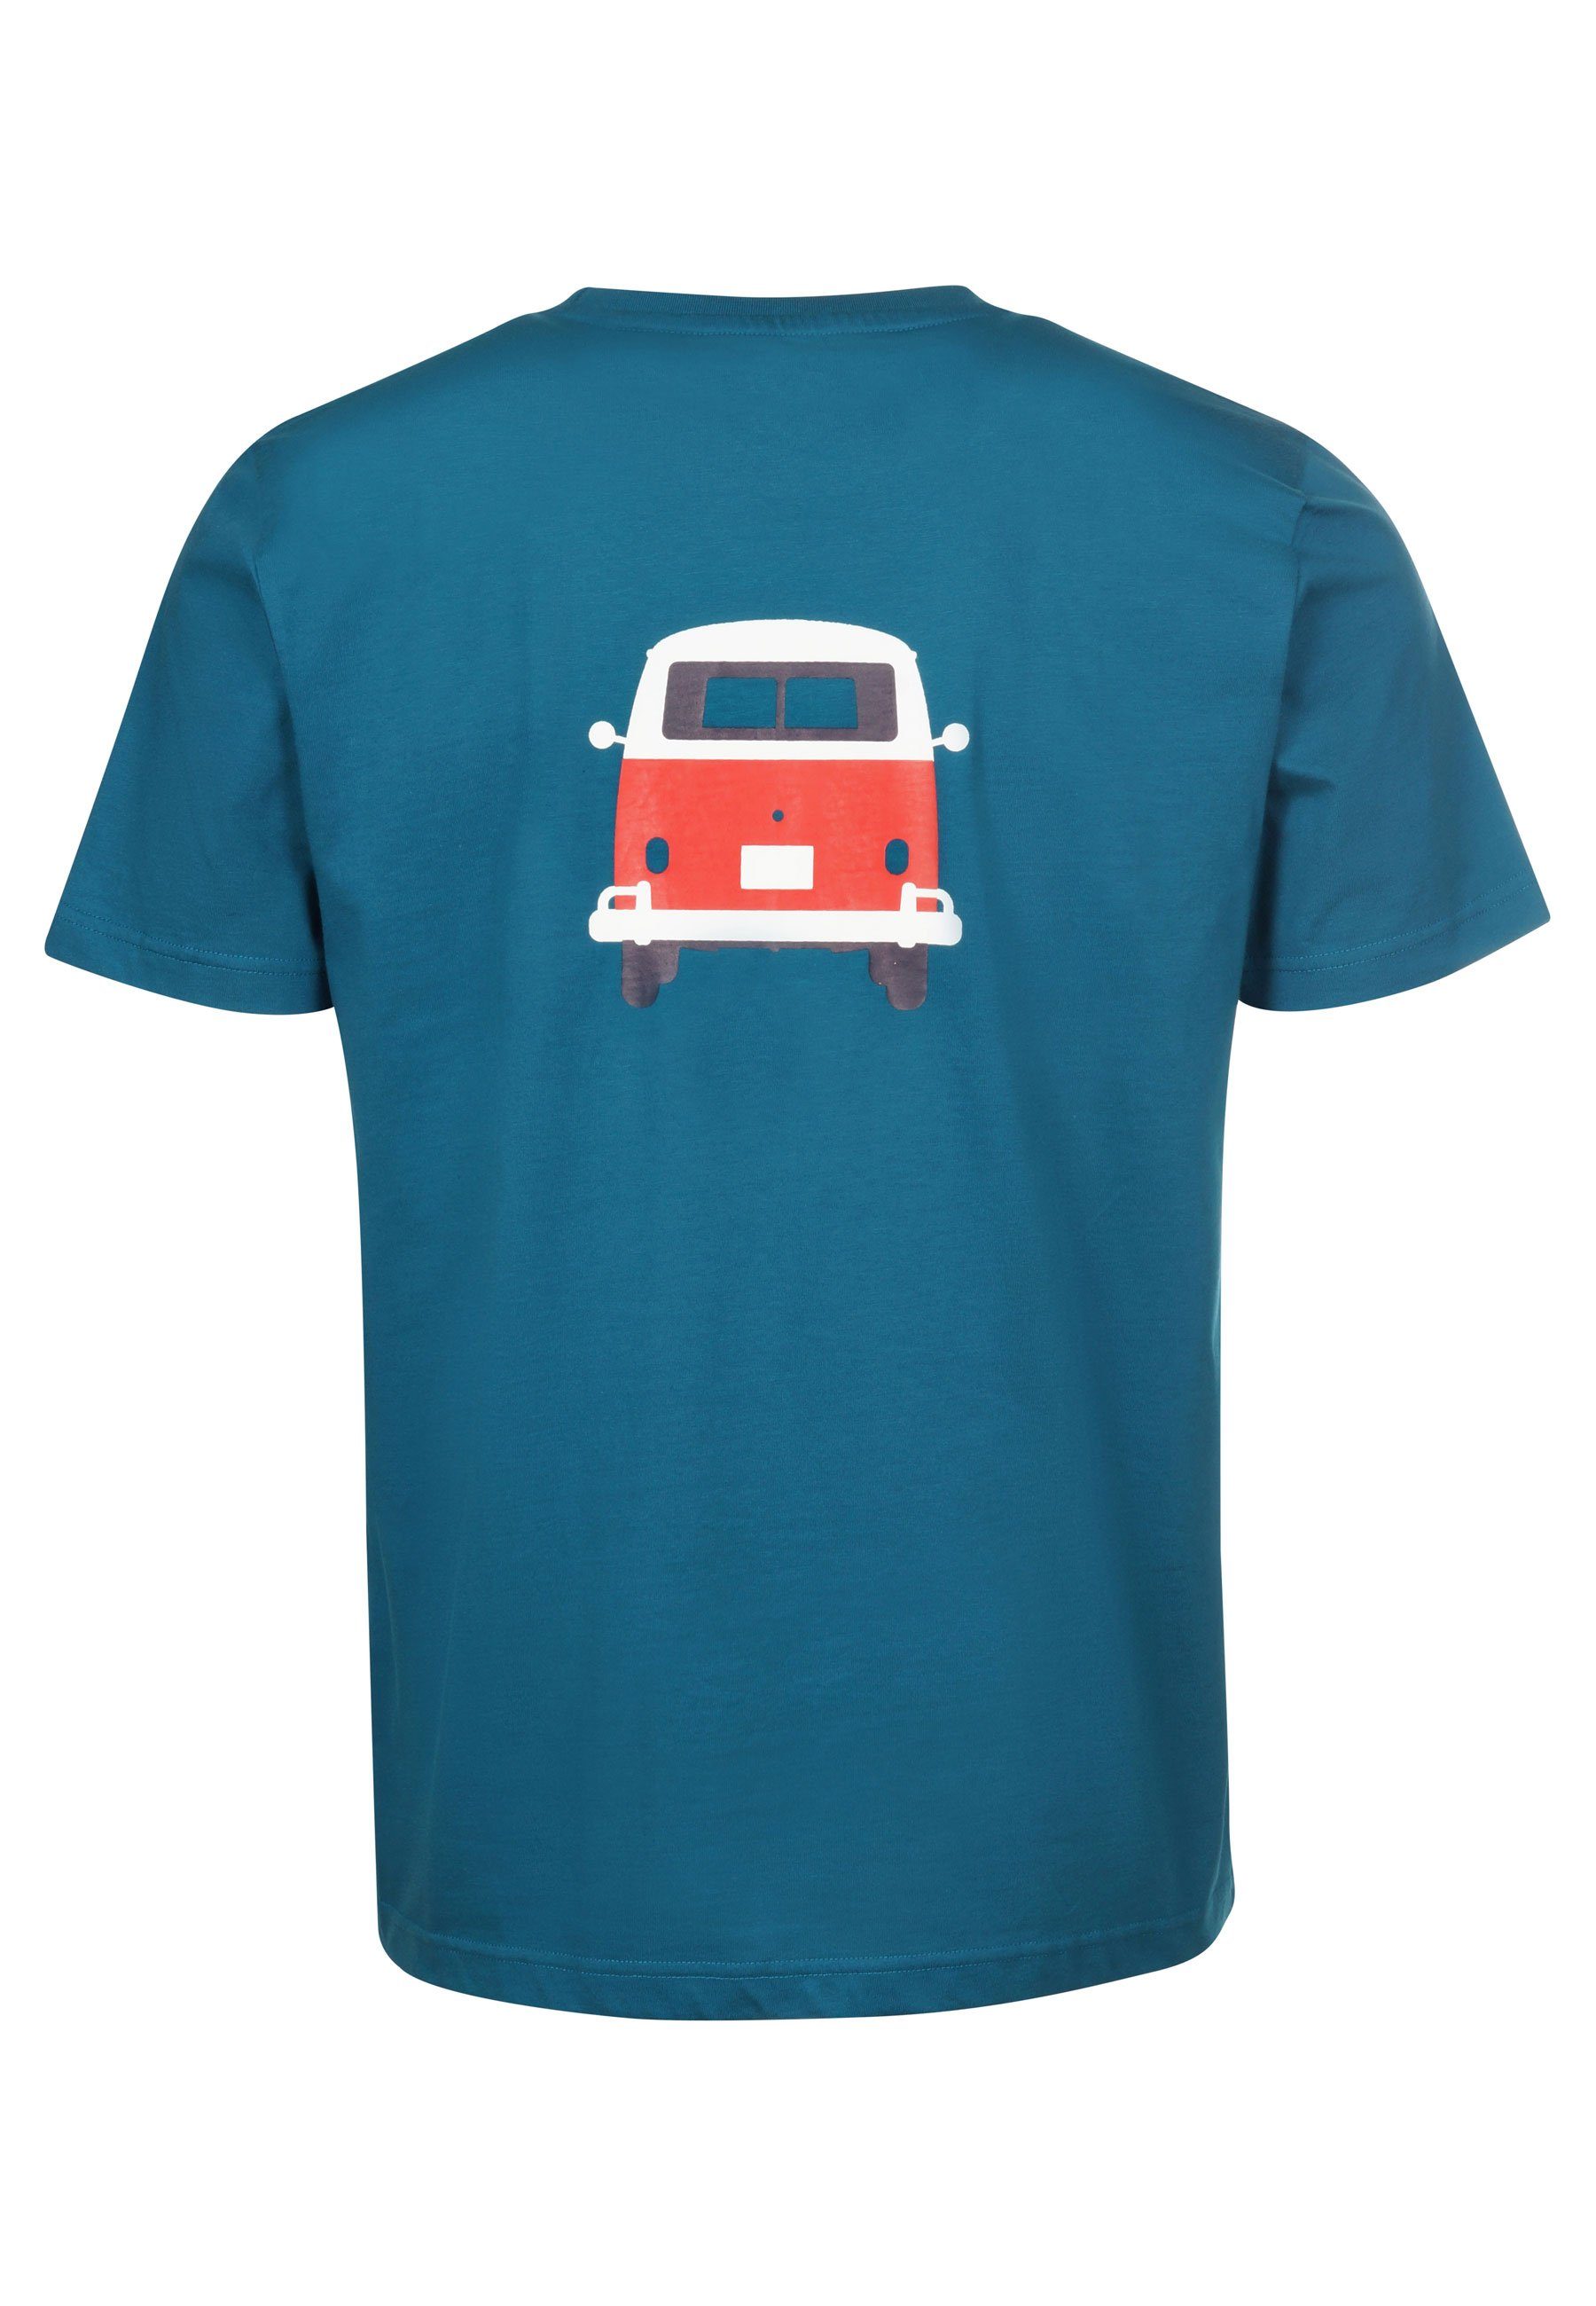 Brust Bulli coral blue Print lizenzierter Rücken VW Elkline T-Shirt Methusalem